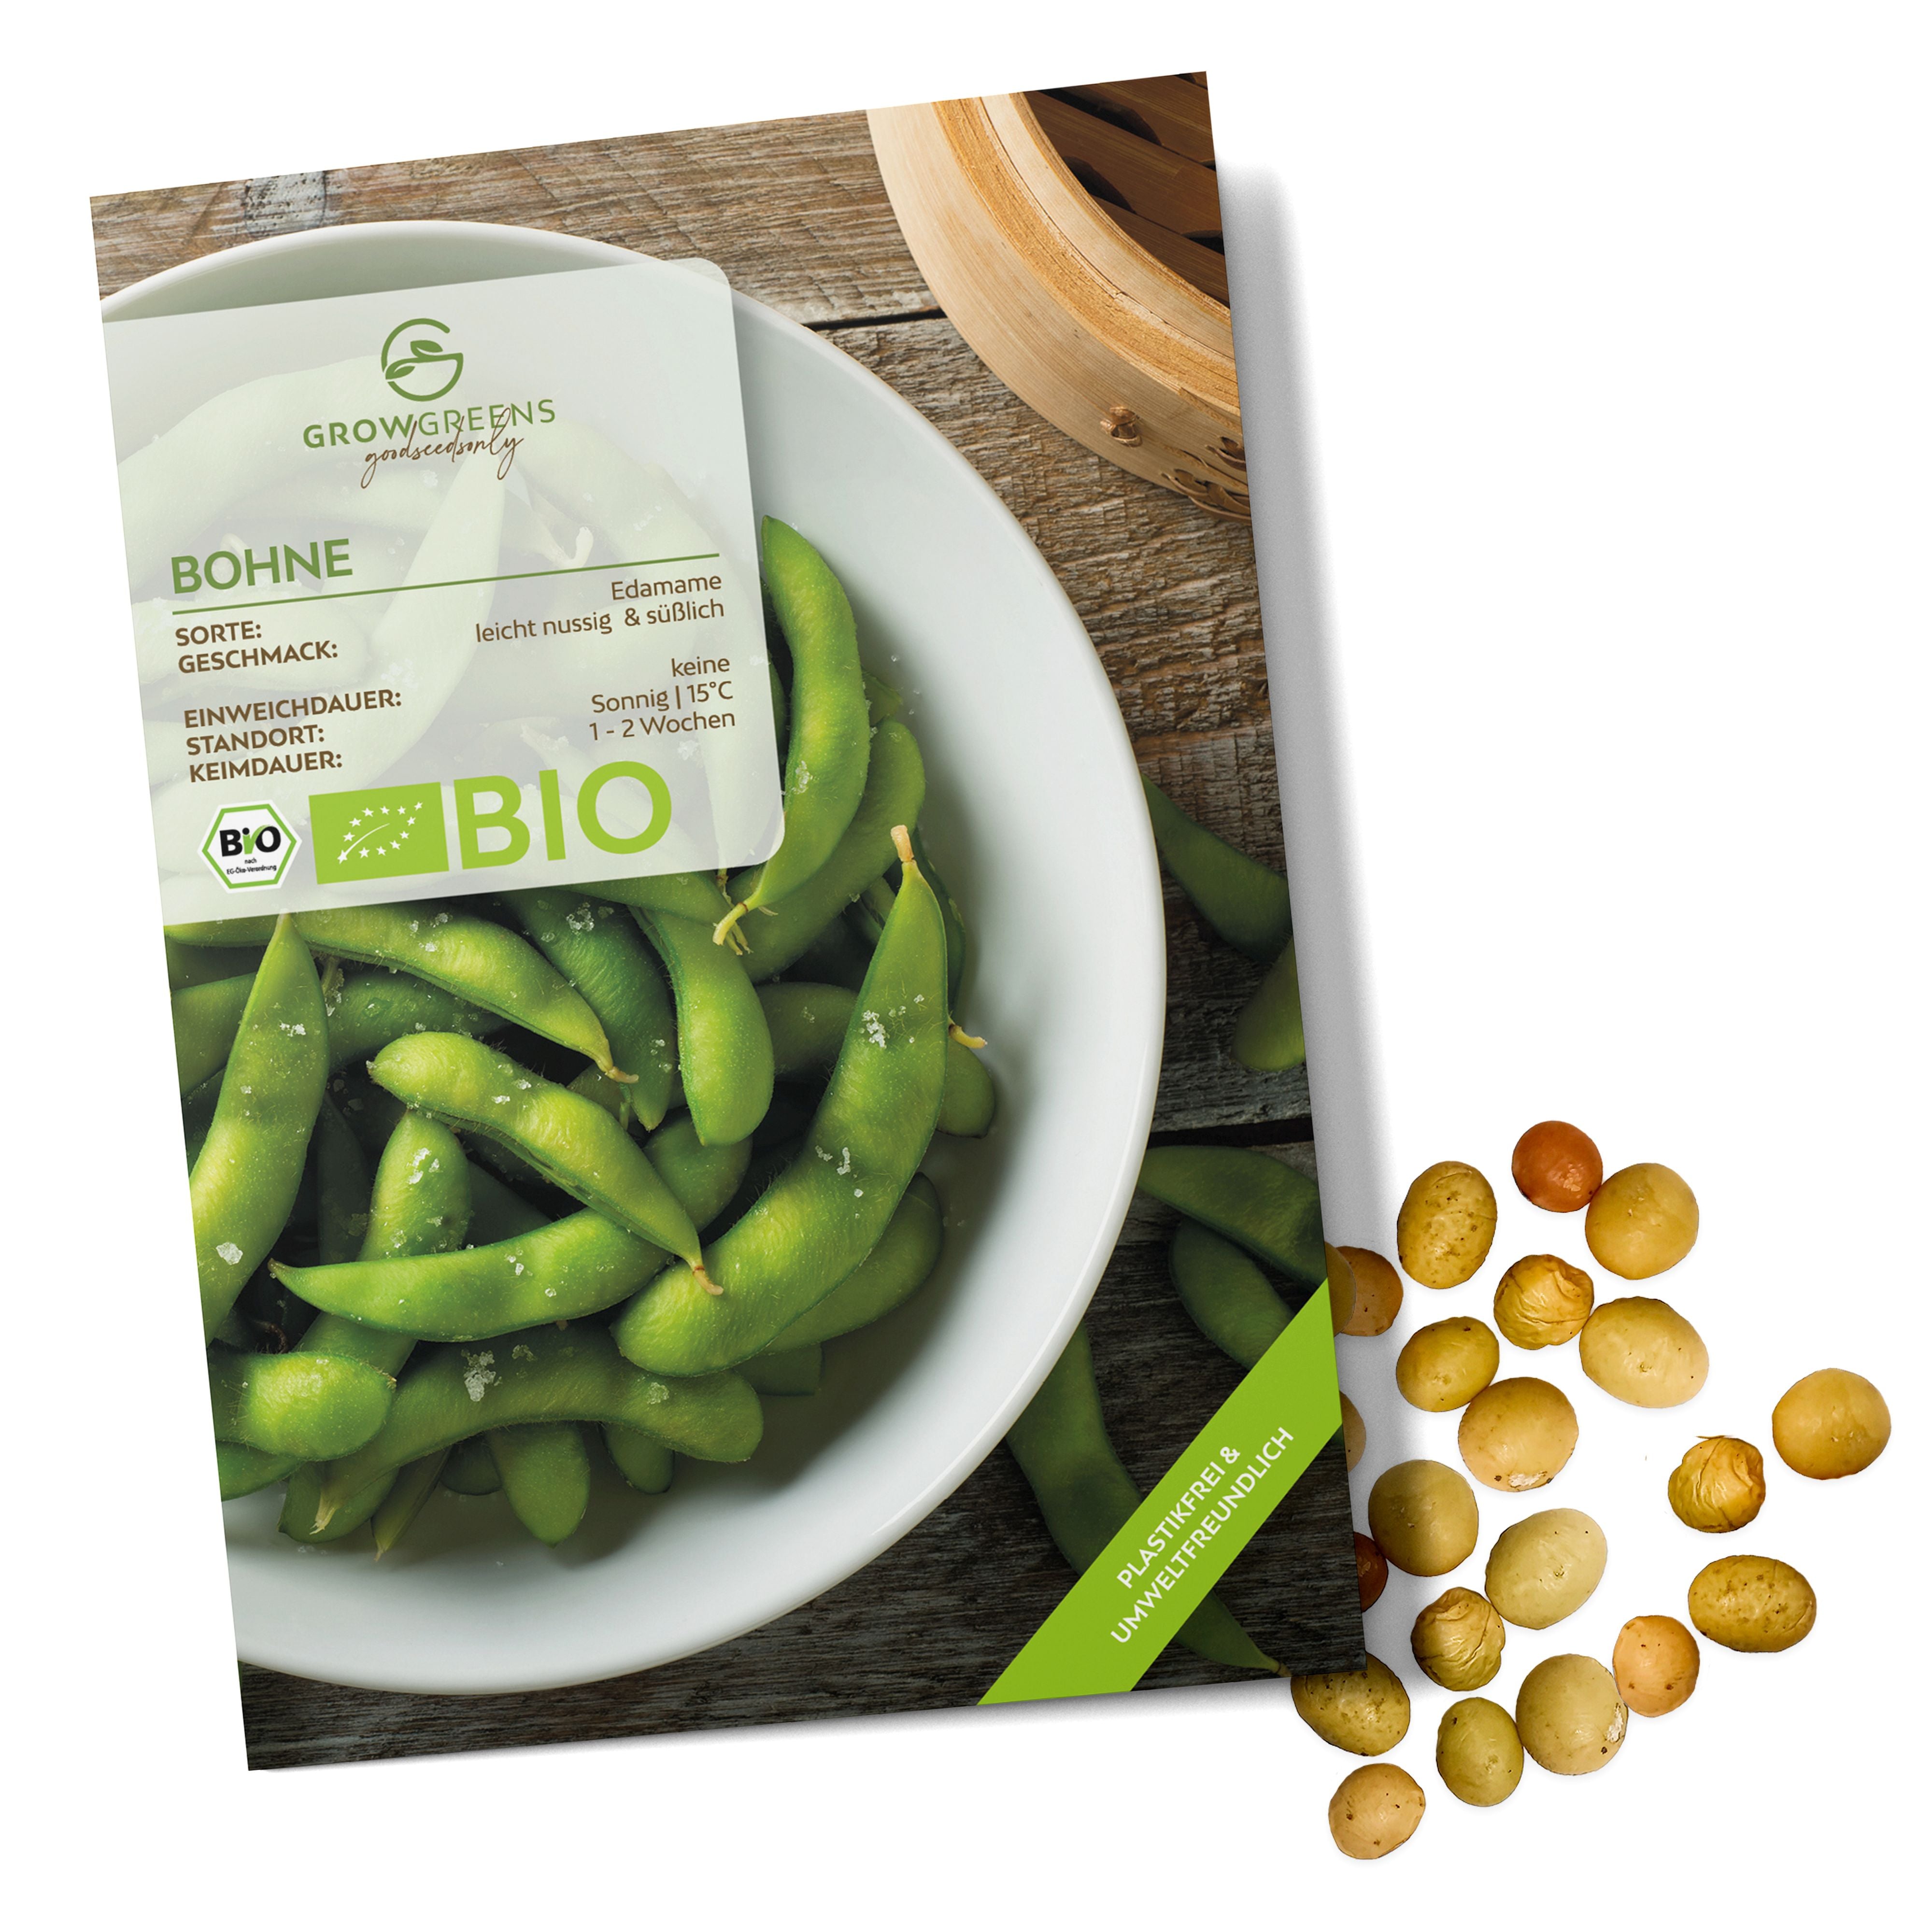 BIO Bohnen Samen (Edamame) - Bohne Saatgut aus biologischem Anbau (12 Korn)